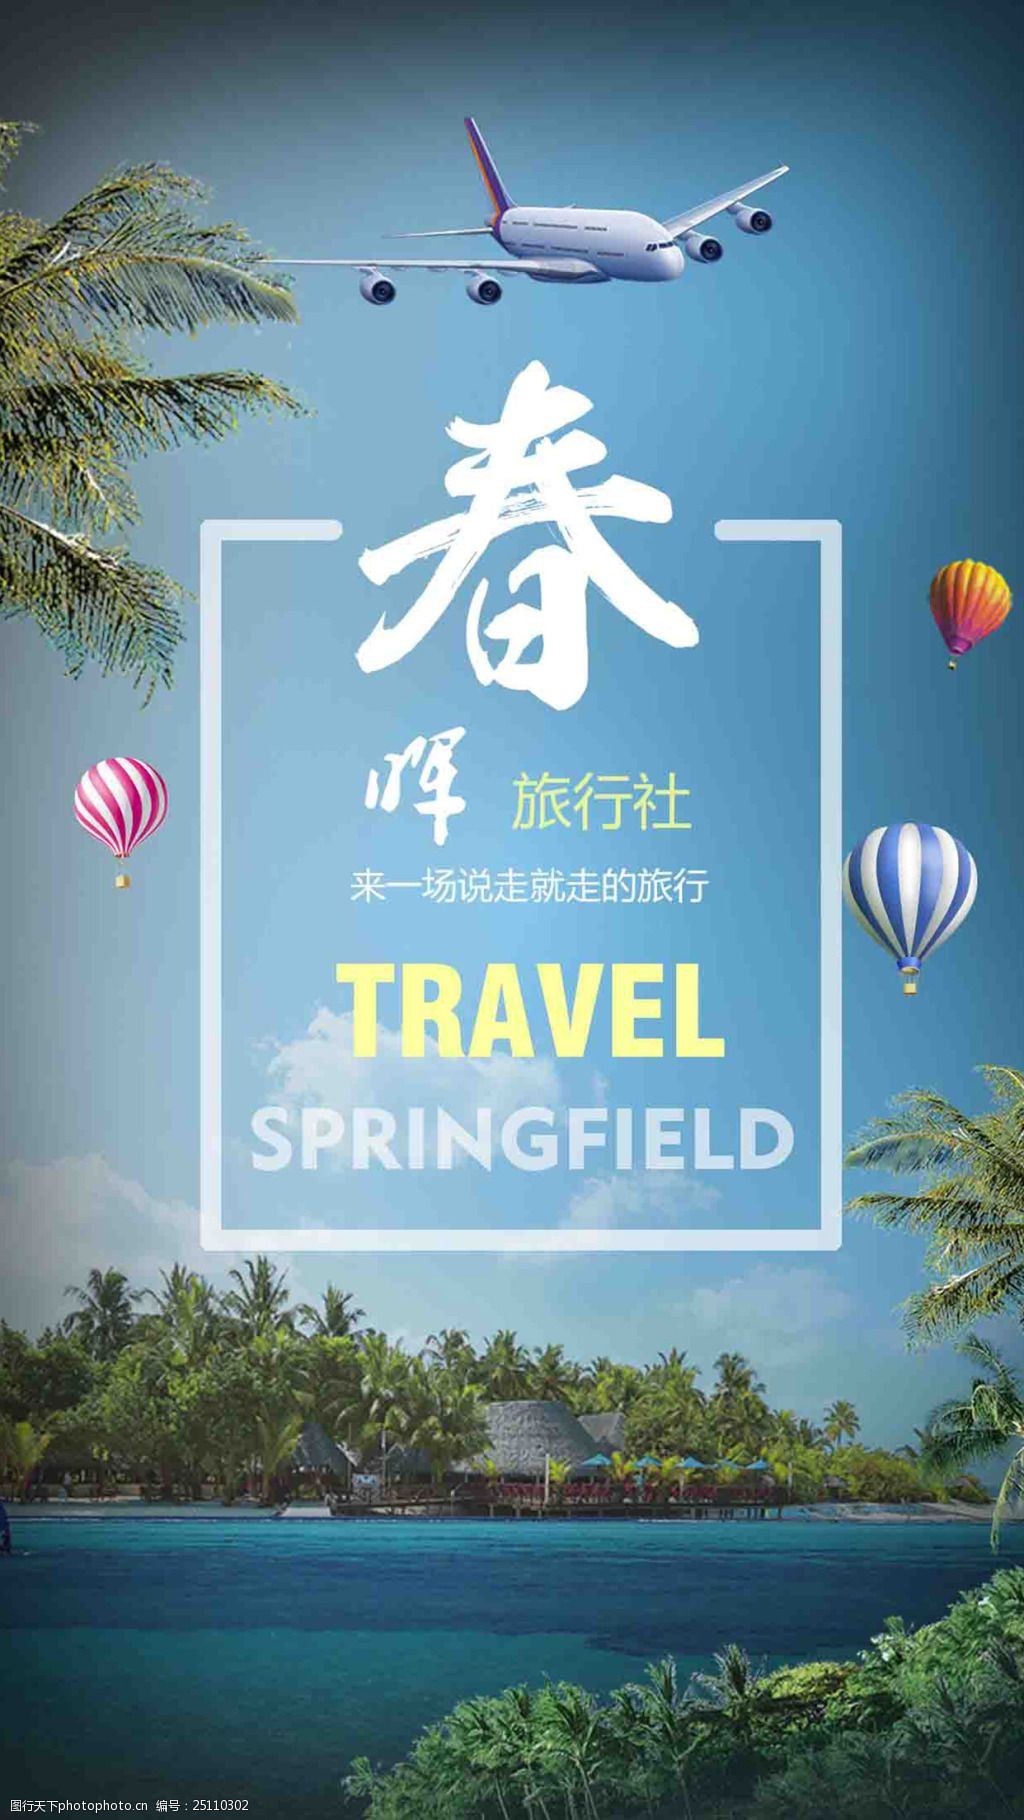 关键词:春晖旅行社海报 旅行社海报 旅行 旅游 旅游背景 风景背景